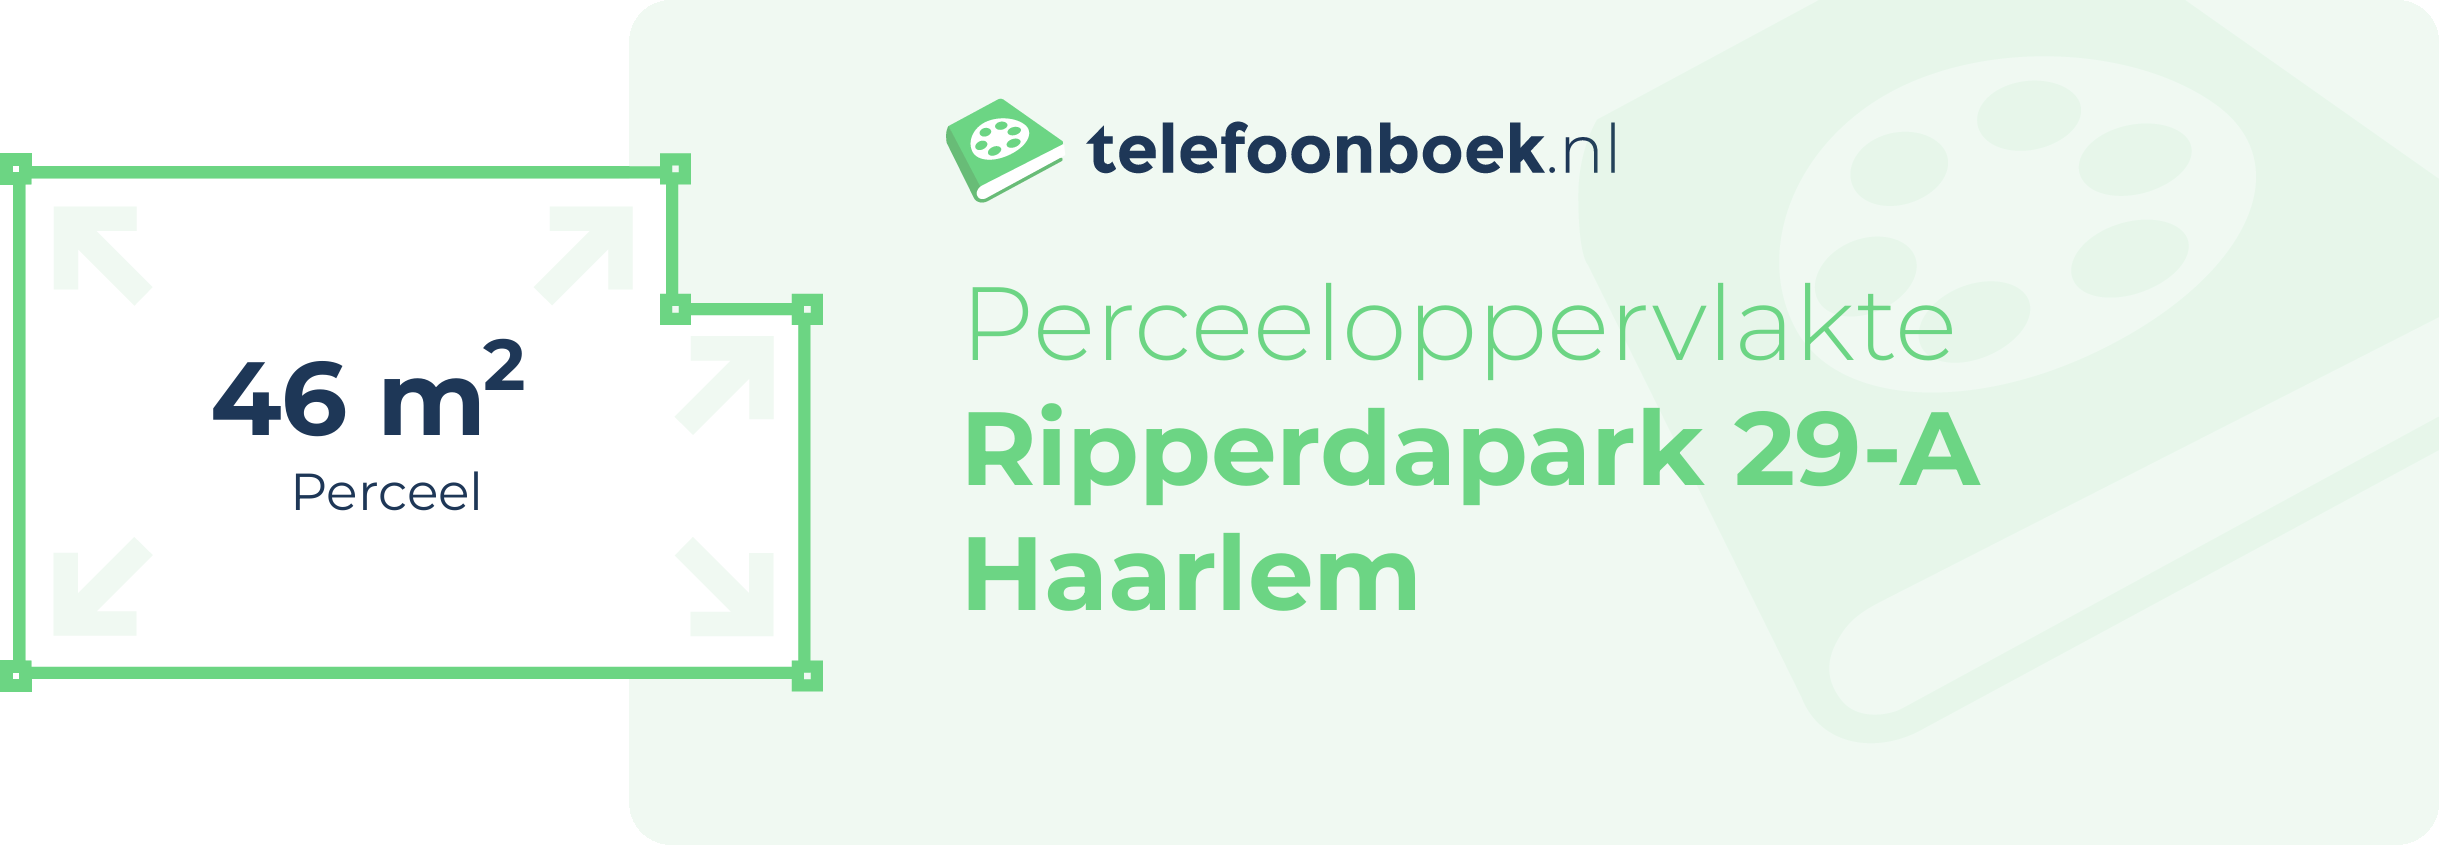 Perceeloppervlakte Ripperdapark 29-A Haarlem